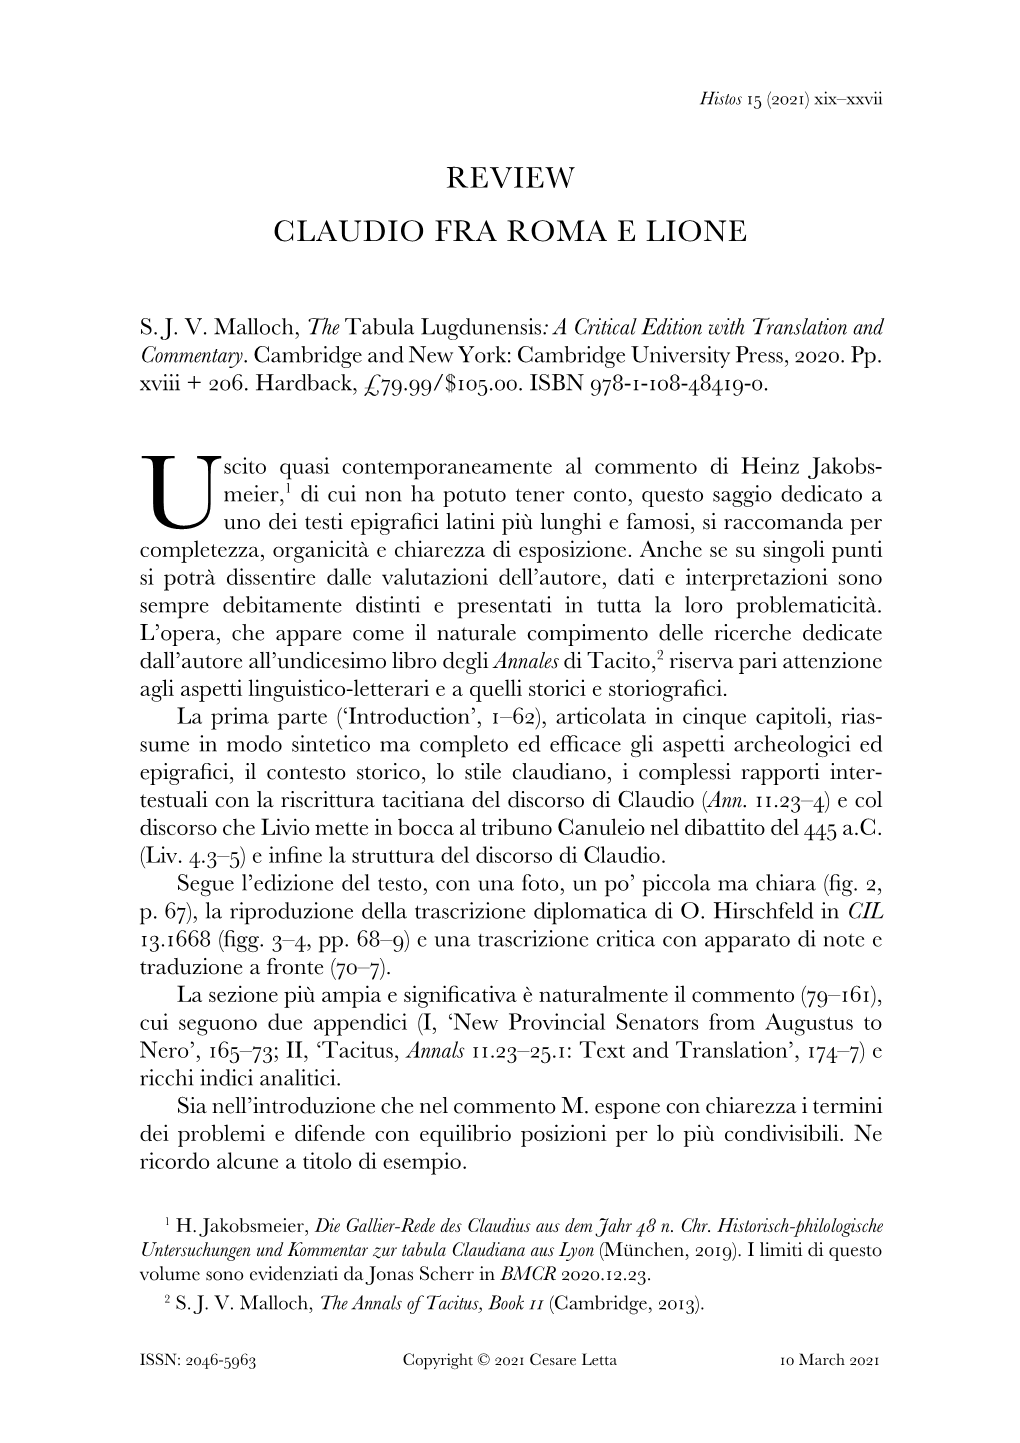 Review Claudio Fra Roma E Lione